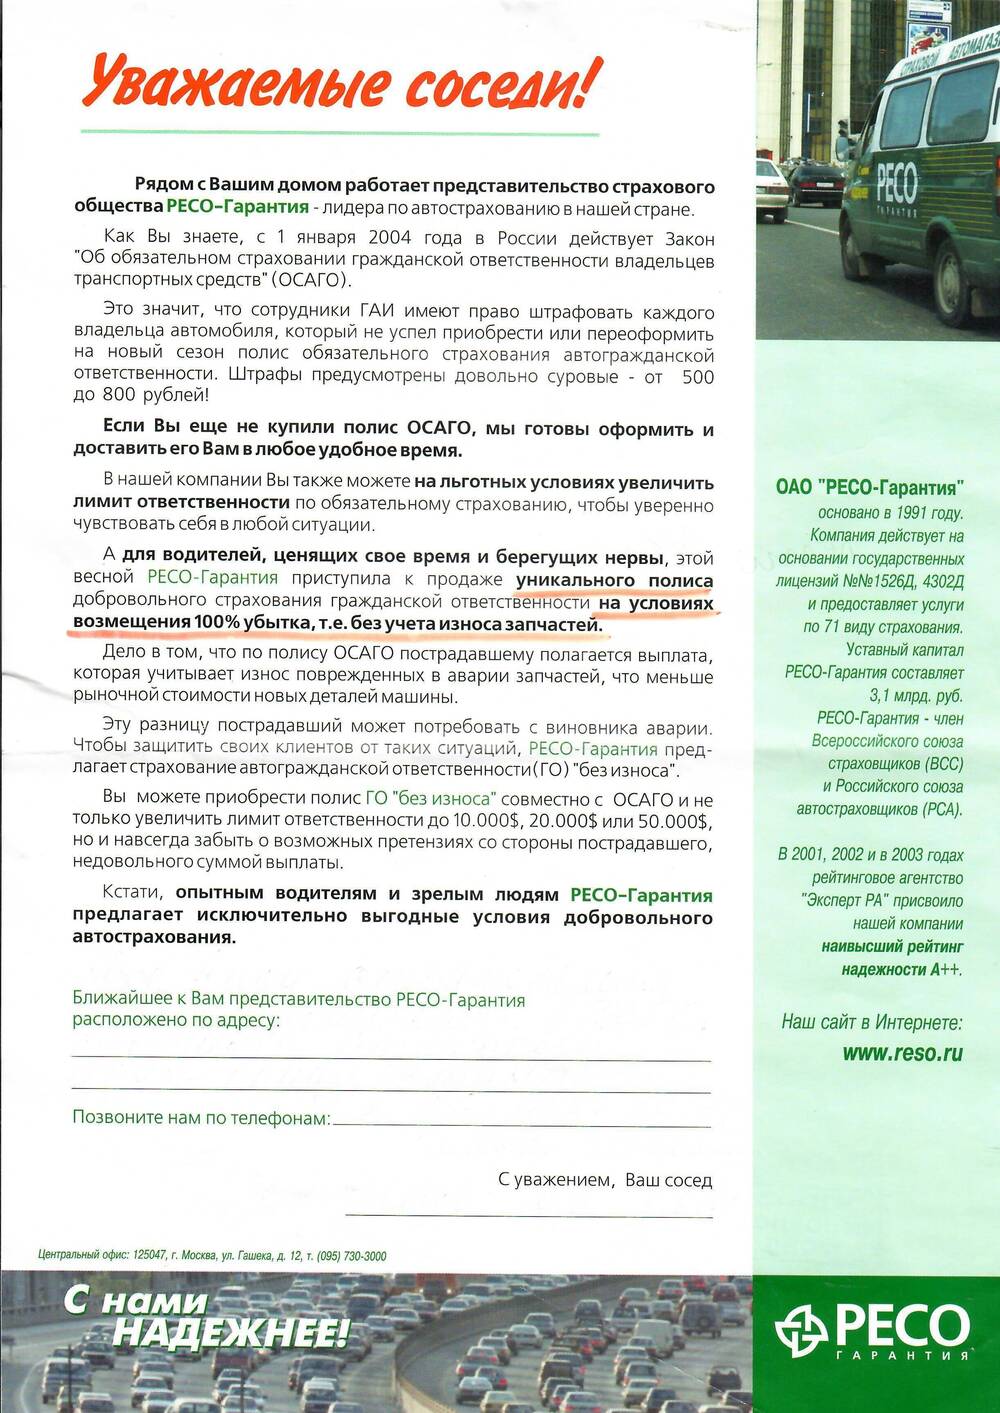 Рекламный листок страхового общества «РЕСО – Гарантия» с предложением покупки полиса автострахования.